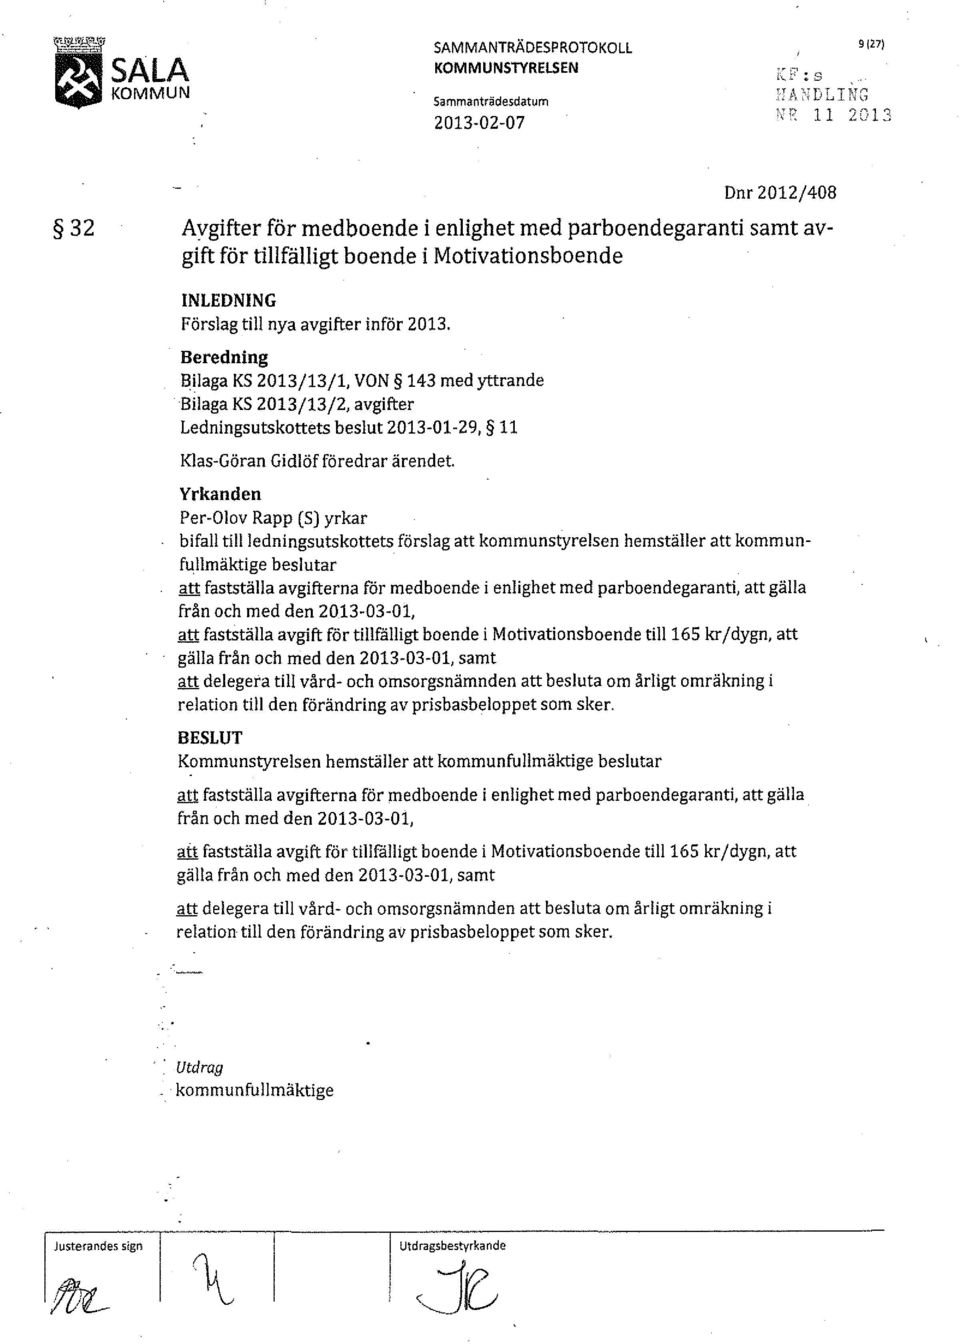 Beredning Bilaga KS 2013/13/1, VON 143 med yttrande Bilaga KS 2013/13/2, avgifter Ledningsutskottets beslut 2013-01-29, 11 Klas-Göran Gidlöf föredrar ärendet.